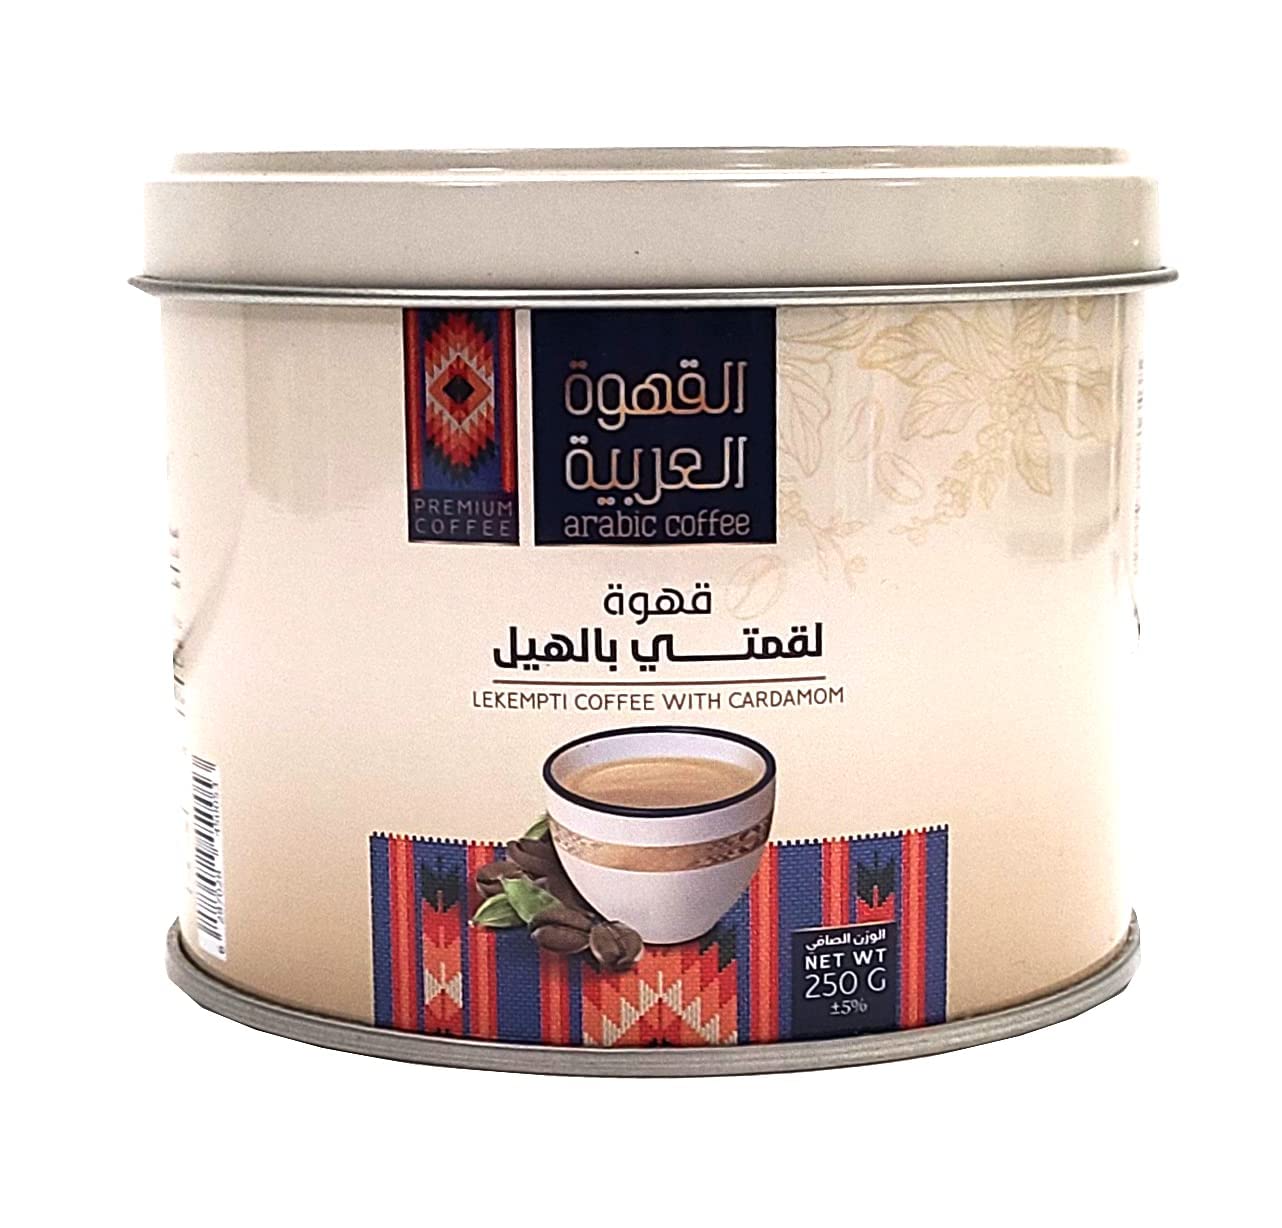 ARABIC COFFEE LAKMATI Ground Premium with cardamom | LAKMATI ARABIC COFFEE with Ground cardamom | Saudi ARABIA coffee | 250 gm 8.8 oz. | قهوة عربية بالهيل | قهوة لقمتي بالهيل درجة أولى محمصة ومطحون | قهوة سعودية عربية بالهيل